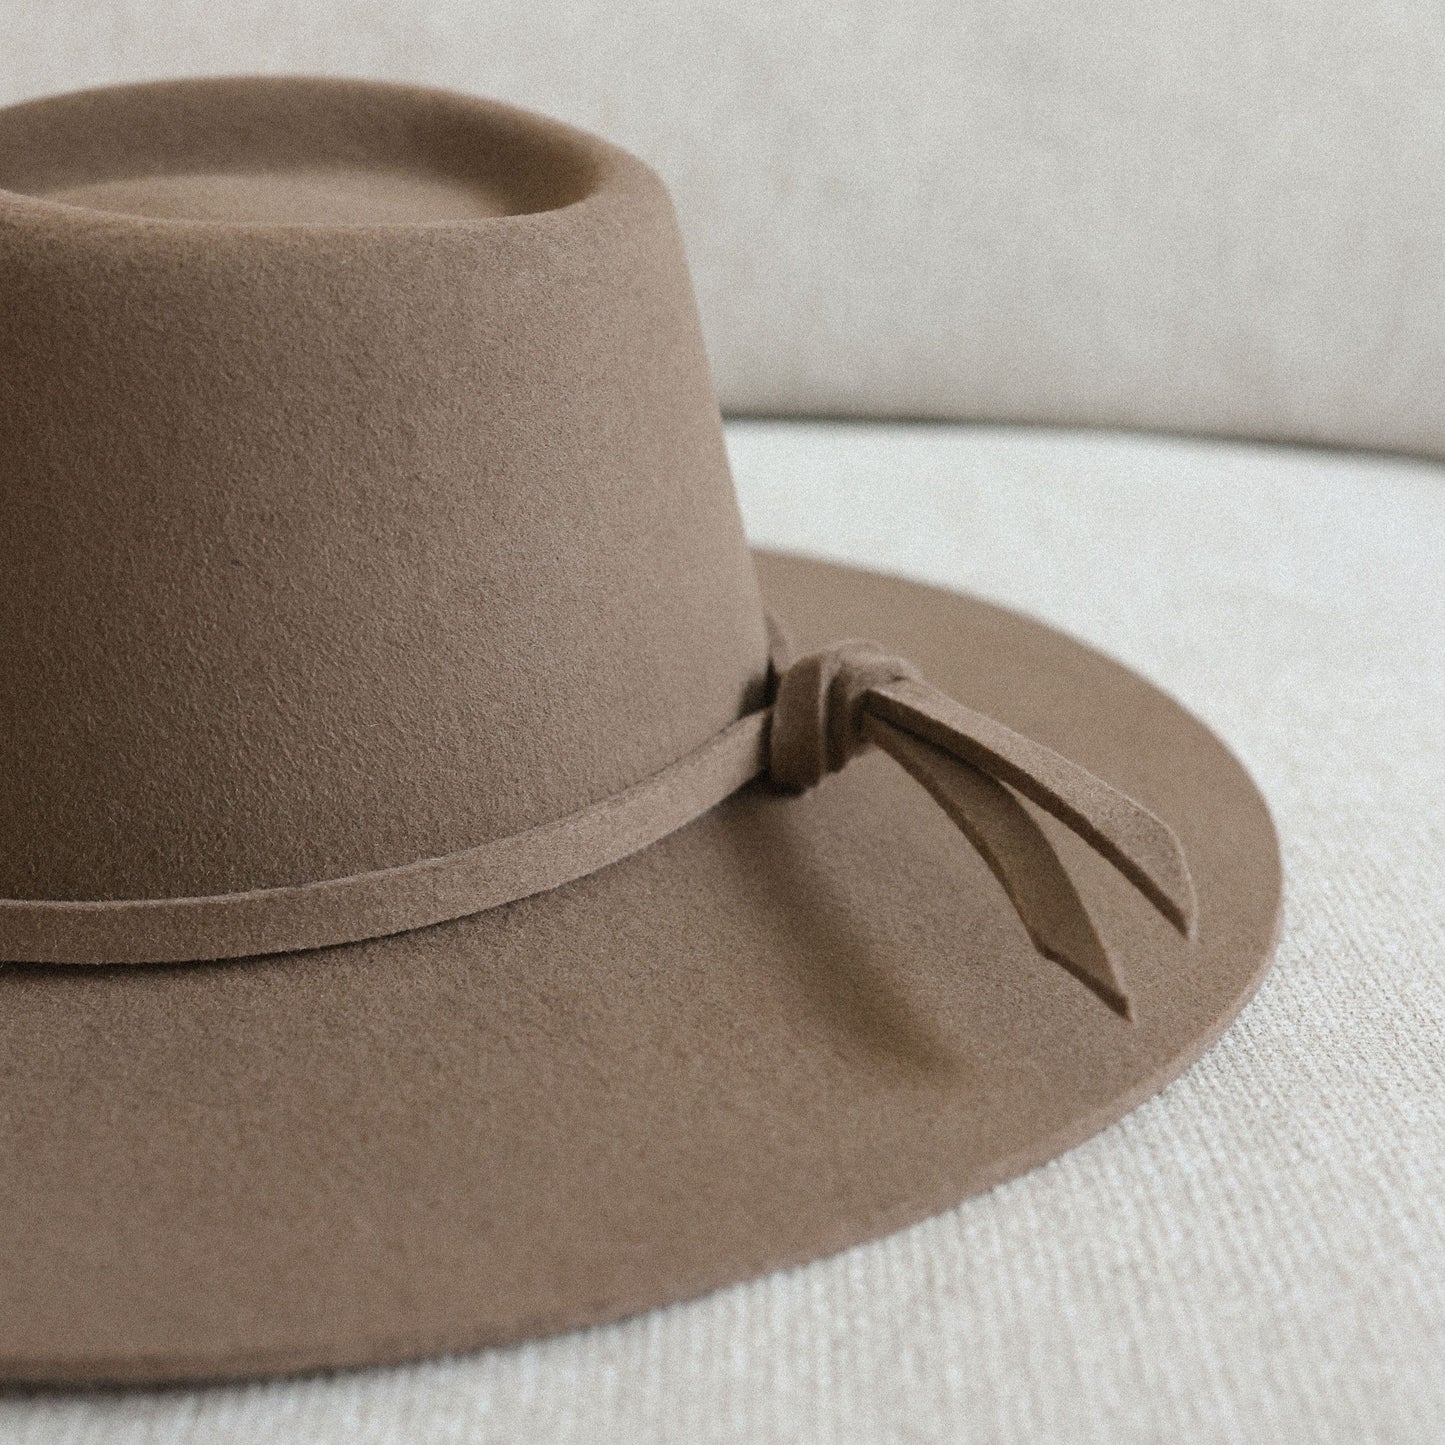 Wide-Brim Teardrop Wool Felt Hat in Taupe